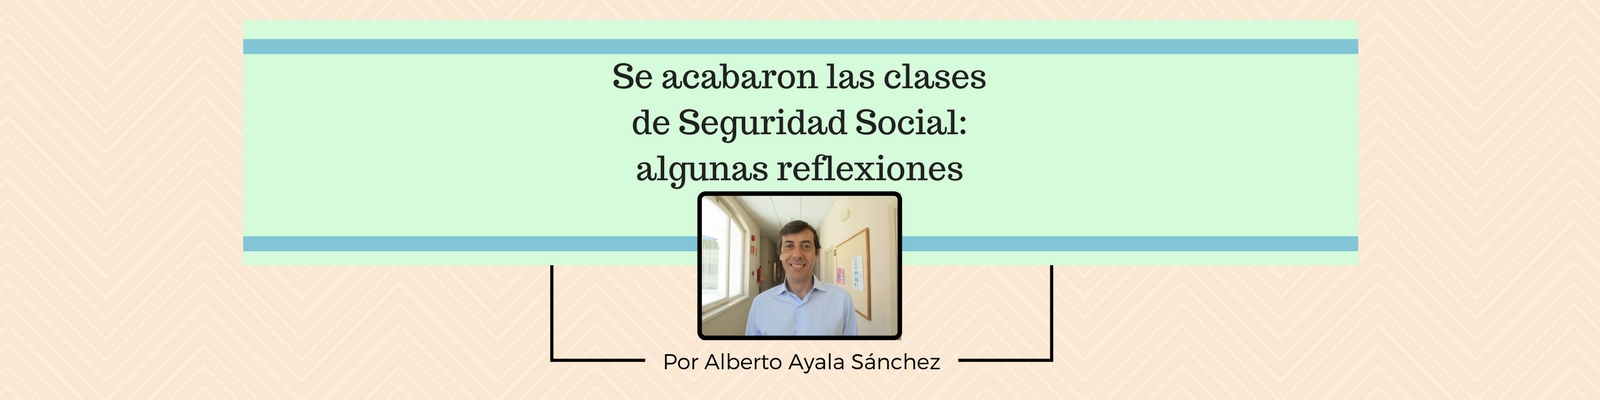 Se acabaron las clases de Seguridad Social: algunas reflexiones a partir de los comentarios del alumnado. Por Alberto Ayala Sánchez